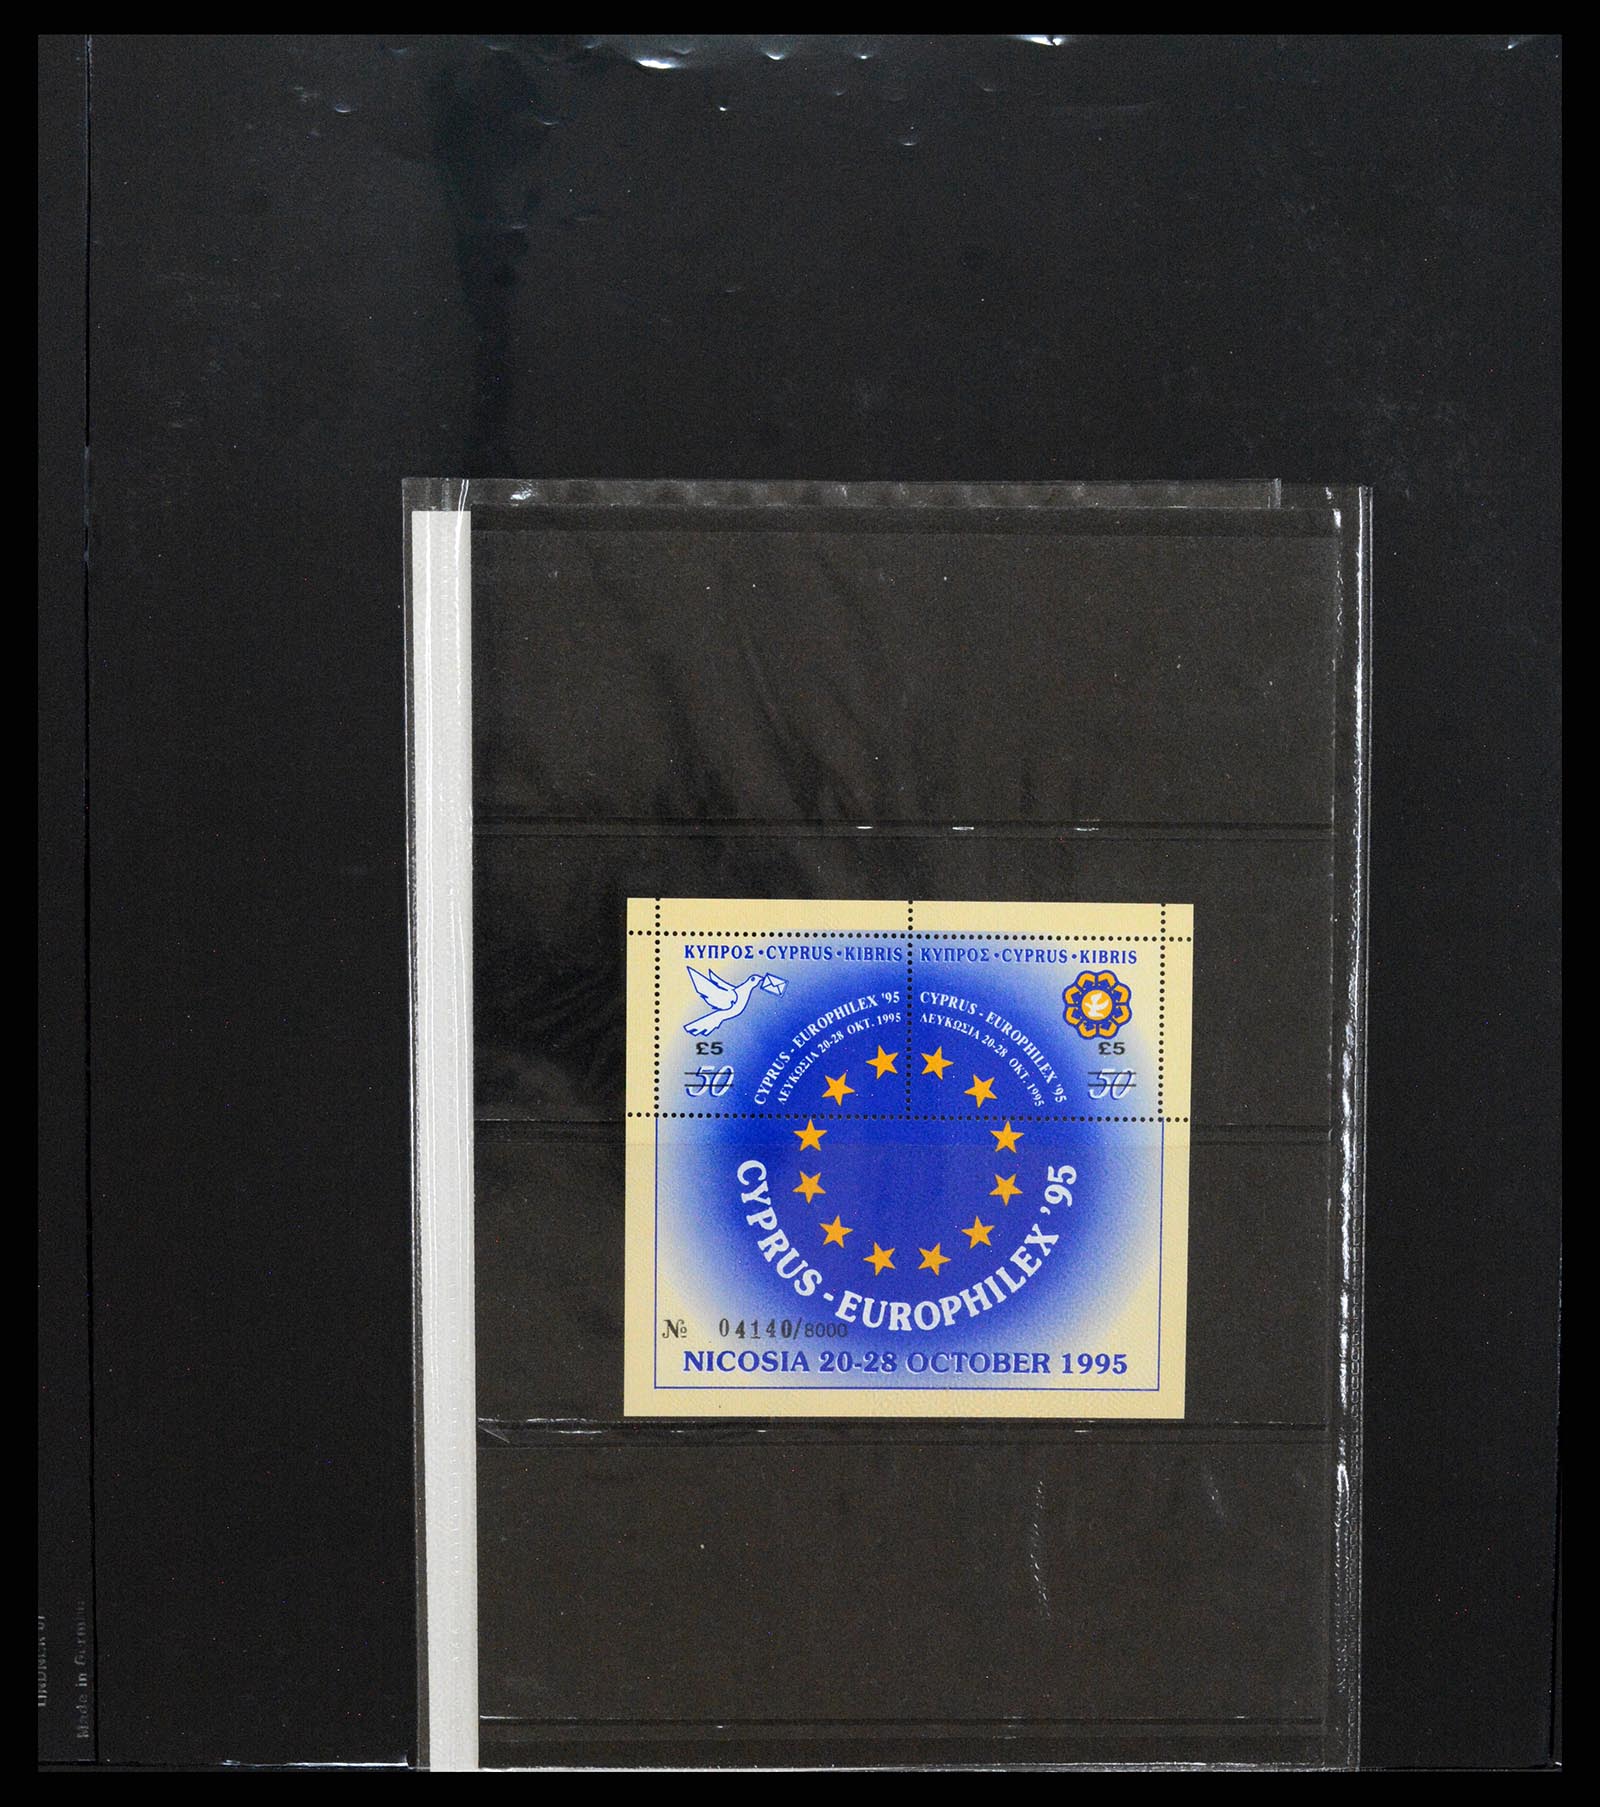 37345 018 - Stamp collection 37345 European countries souvenir sheets.